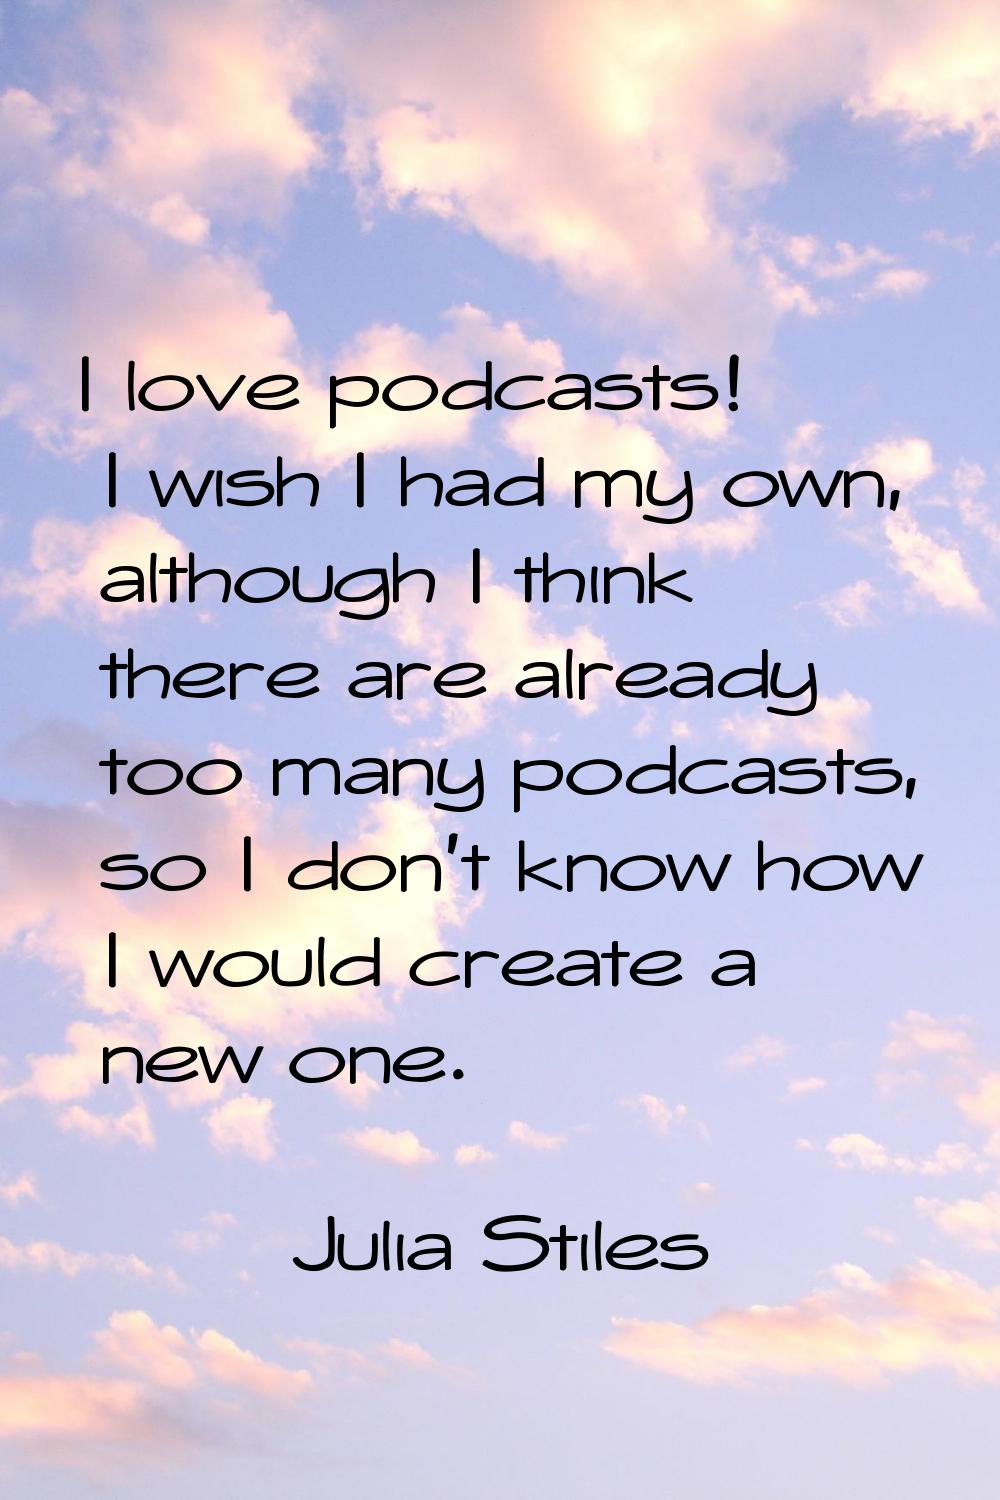 I love podcasts! I wish I had my own, although I think there are already too many podcasts, so I do